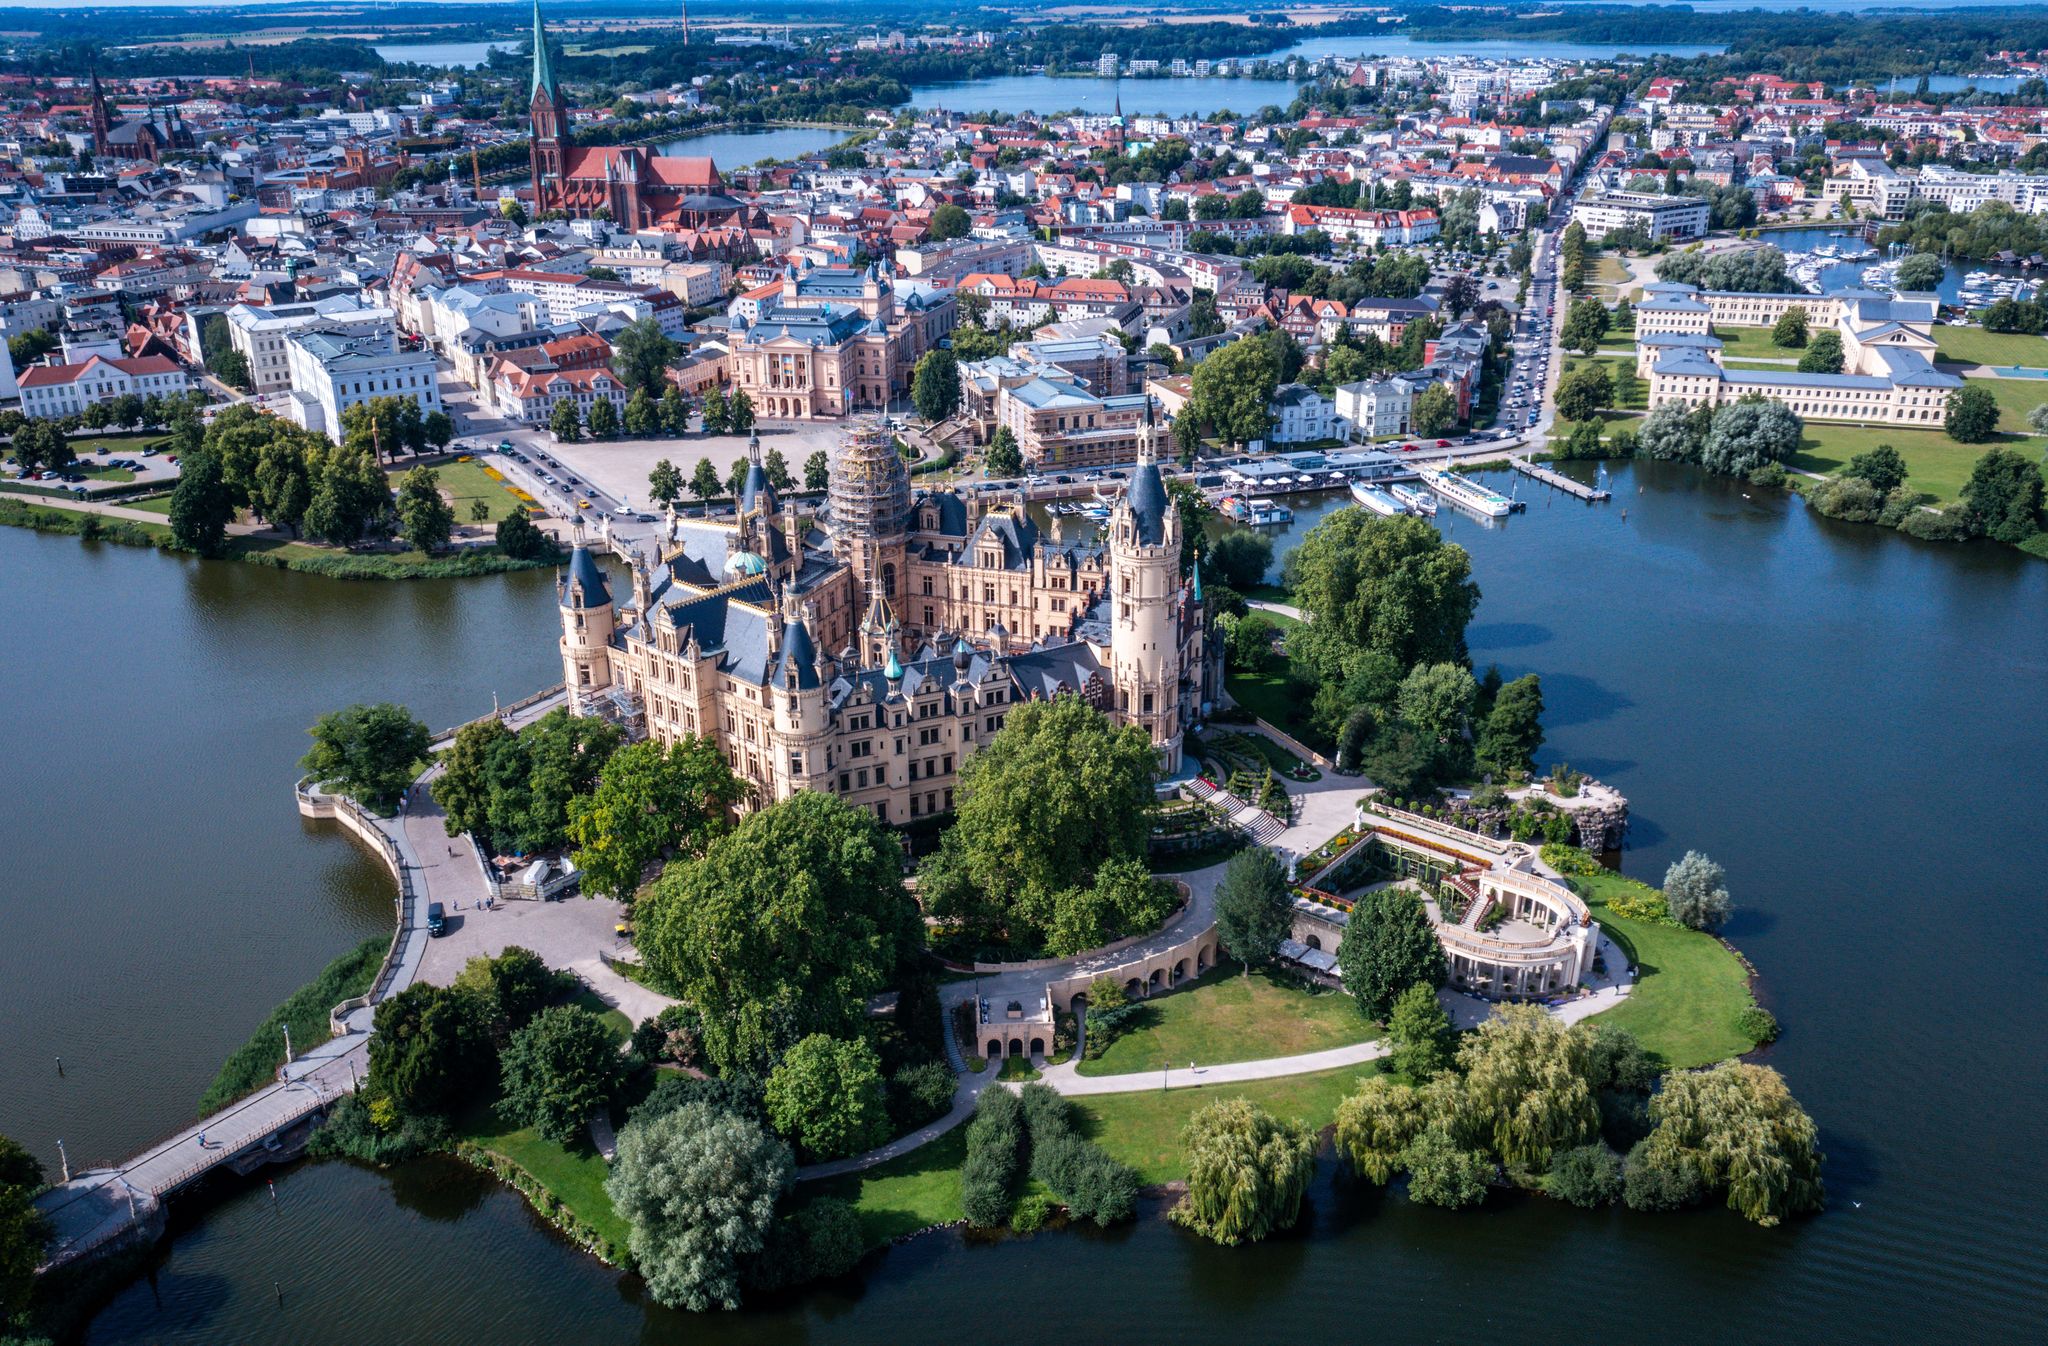 Das Schloss ist das Wahrzeichen von Schwerin. Die einstige Residenz der mecklenburgischen Herzöge soll Weltkulturerbe werden. Foto: Jens Büttner/dpa